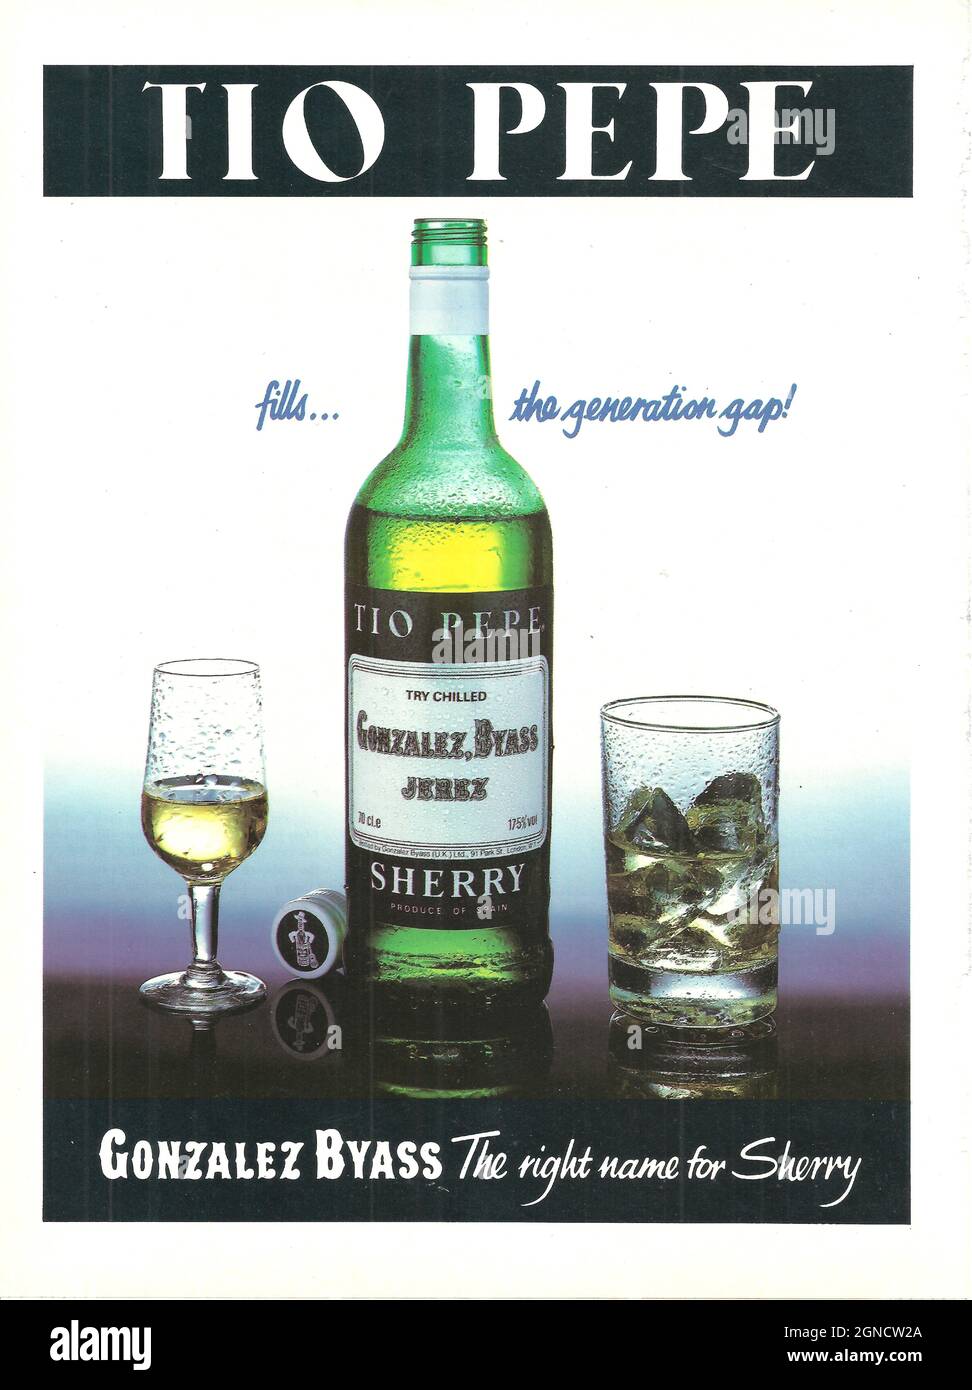 Tio Pepe Sherry publicité publicitaire publicitaire vintage publicité années 1970 années 1980 Banque D'Images